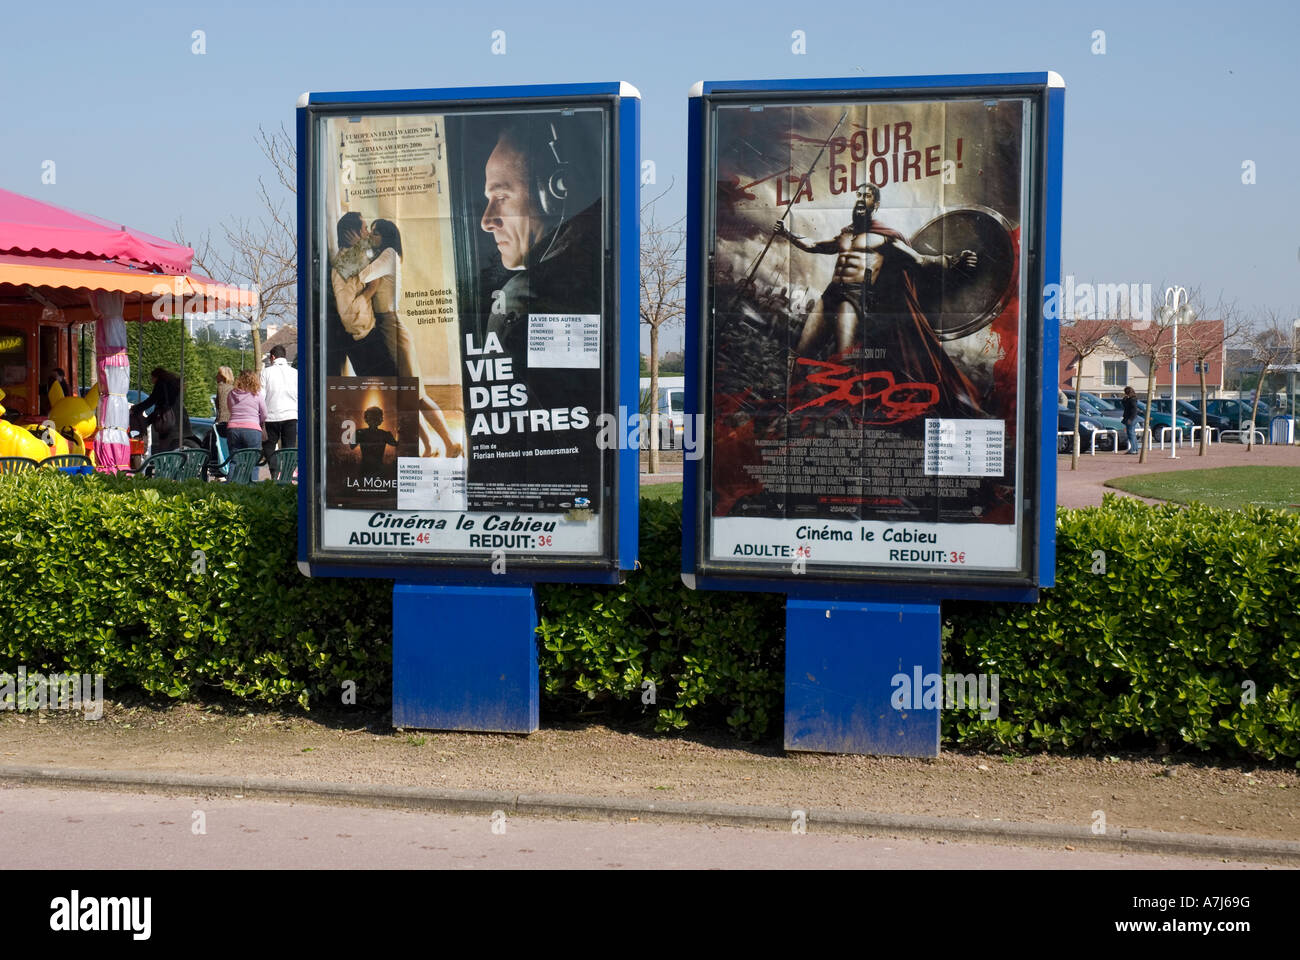 Film/cine anuncios, Ouistreham, Normandía, Francia Foto de stock